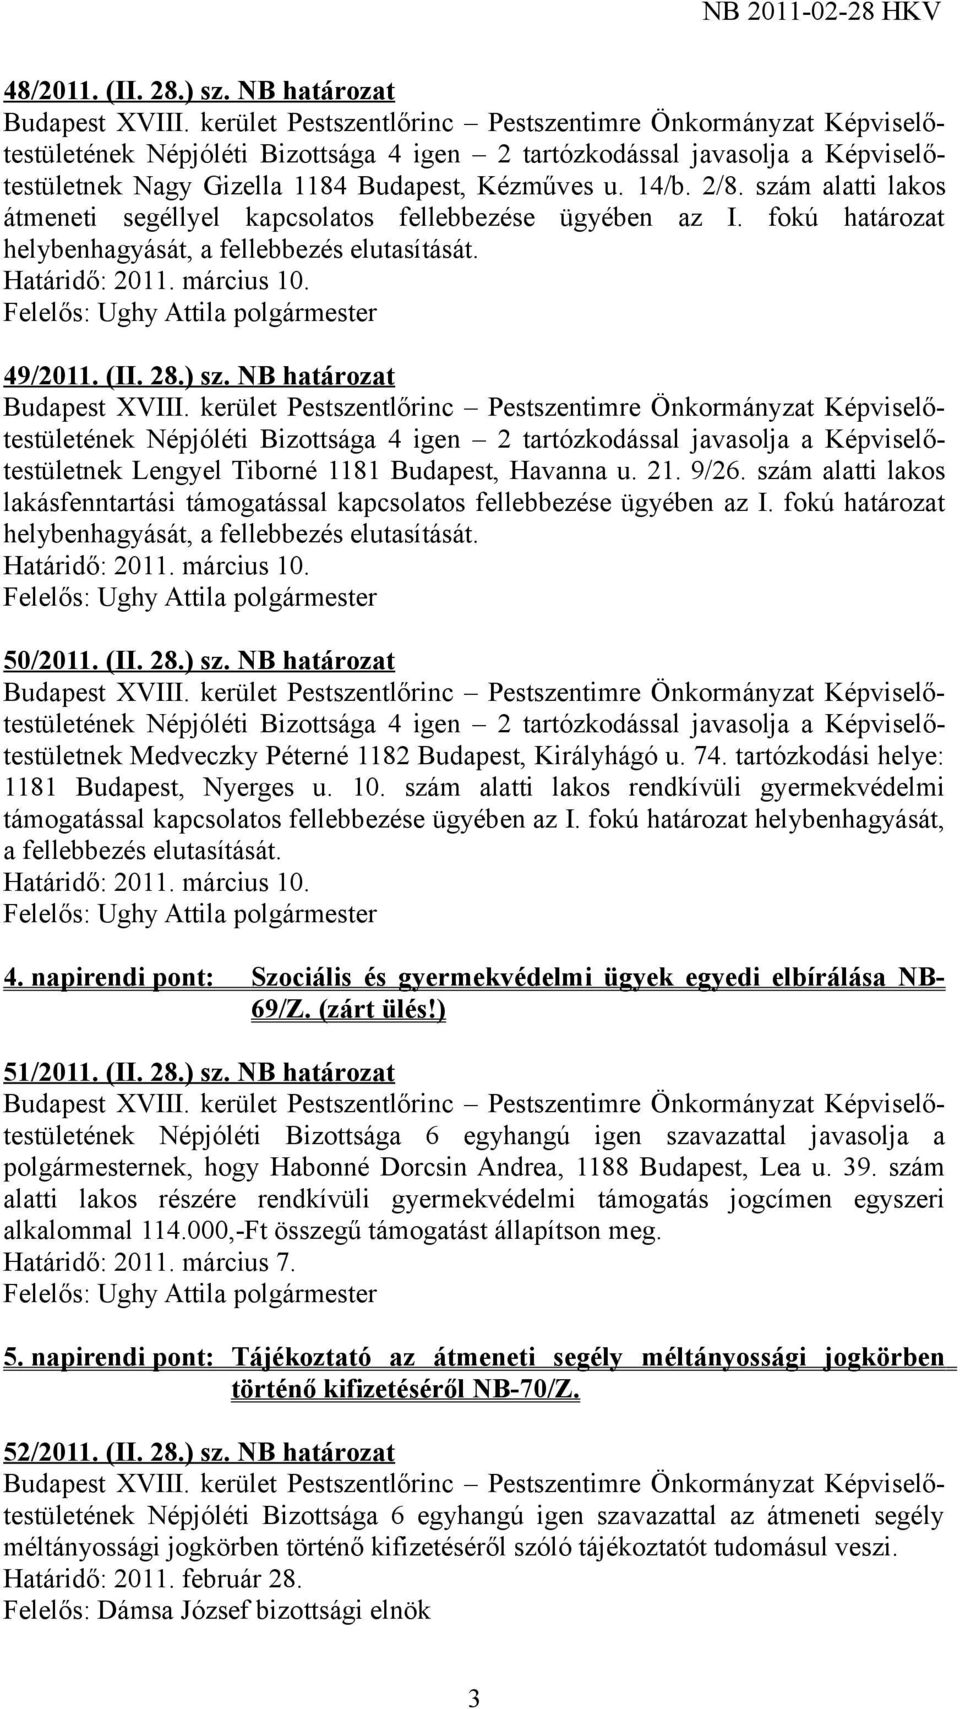 NB határozat Népjóléti Bizottsága 4 igen 2 tartózkodással javasolja a Képviselőtestületnek Lengyel Tiborné 1181 Budapest, Havanna u. 21. 9/26.